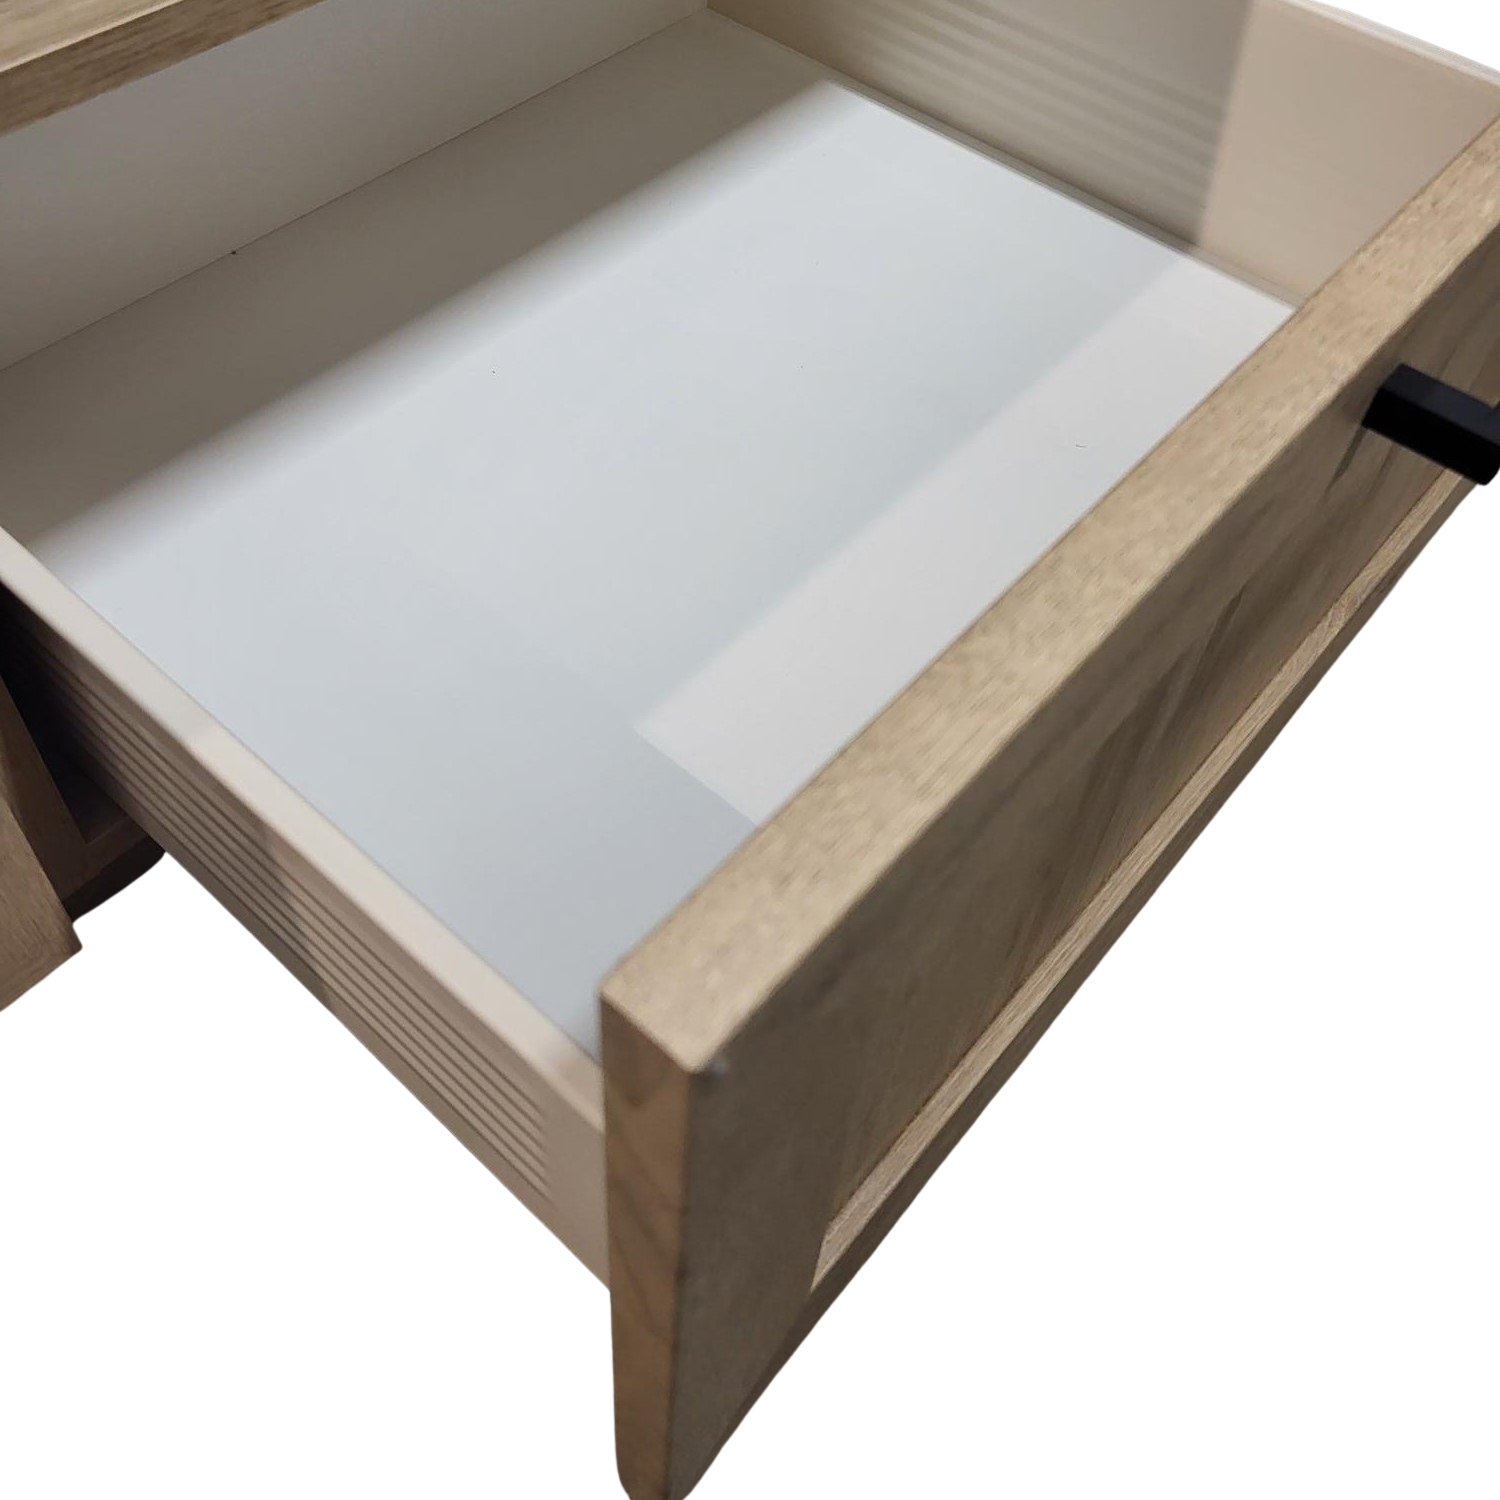 Kitchen base cabinet 1 door / 1 drawer 15''